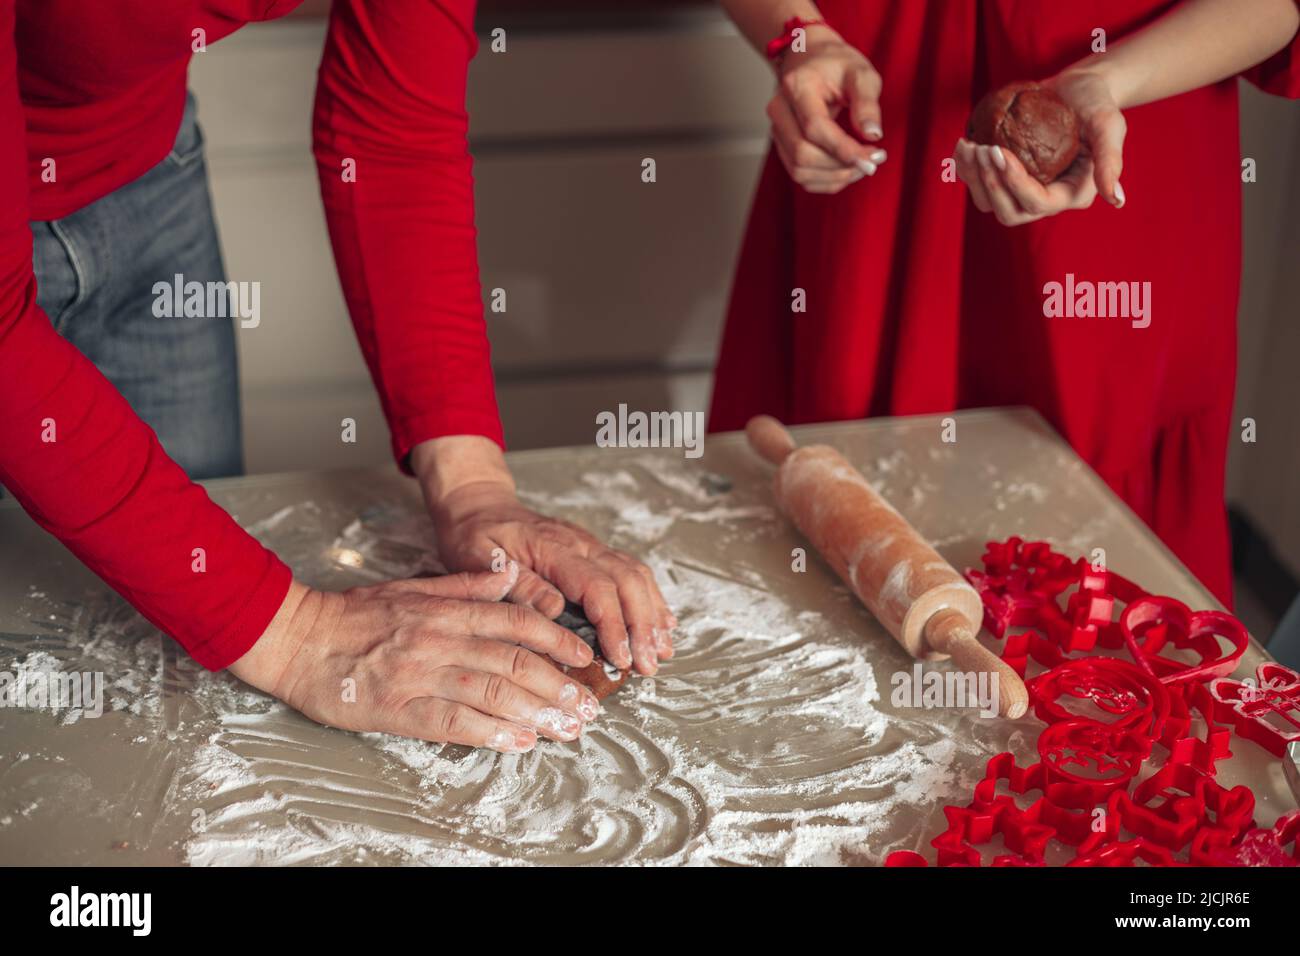 Hausgemachtes Backkonzept, Hände von unkenntlichen Männern und Frauen, die Kekse kochen. Backen zu Hause. Rote Kleidung. Weihnachten. Glück, gemütliches Zuhause, Stockfoto